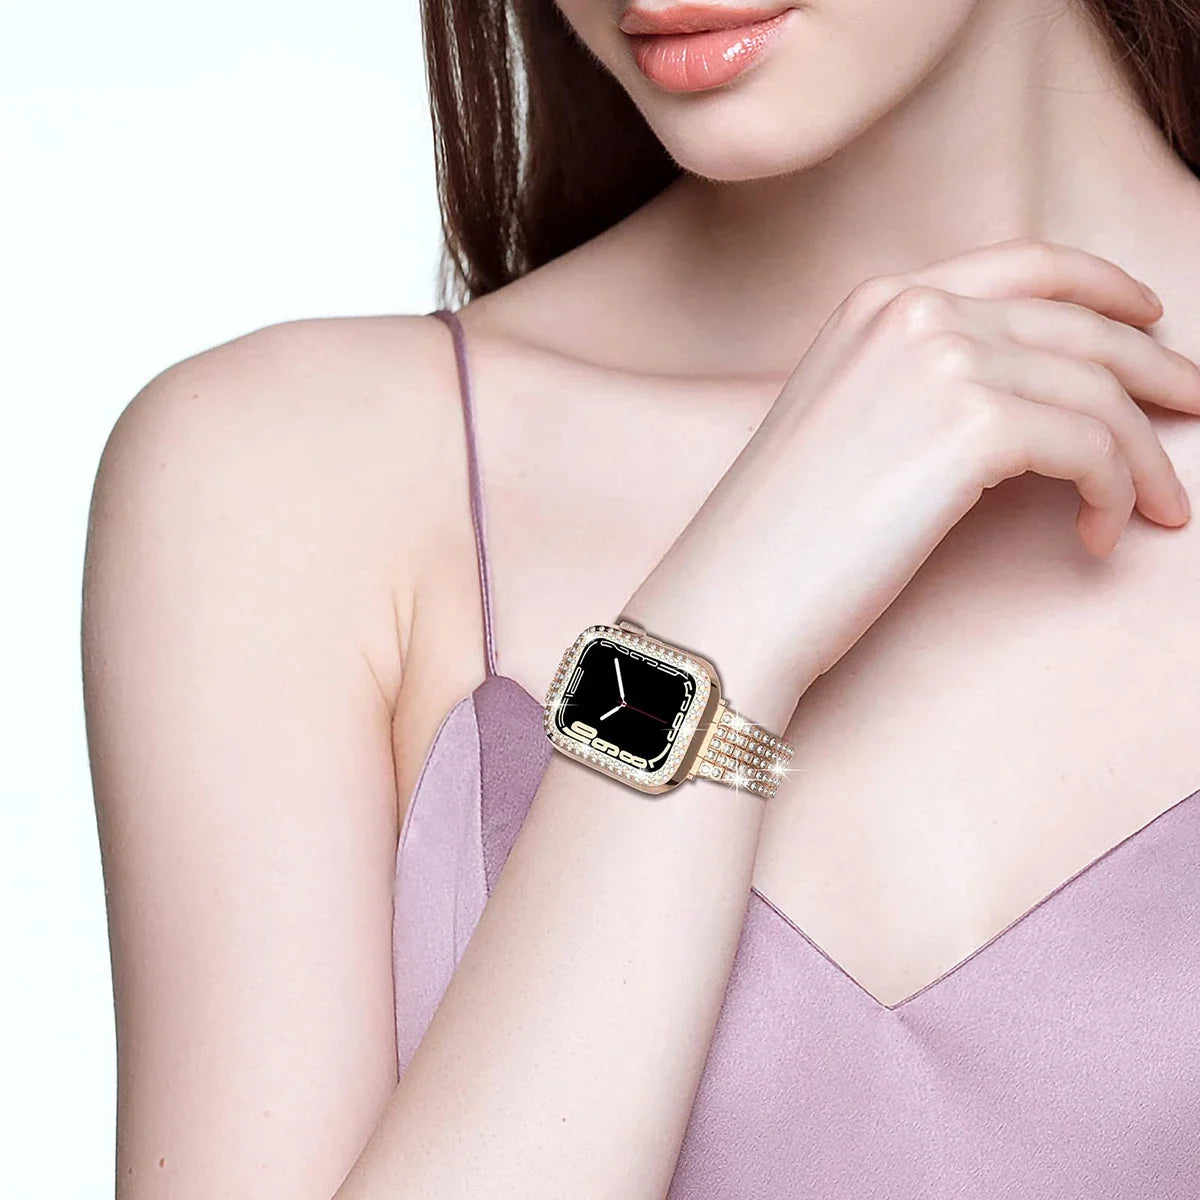 E-Watch™ Glitter Metal Strap Διαμαντένια Προστατευτική Θήκη | Συμβατή ζώνη με όλα τα Apple Watch | Ανοξείδωτο ατσάλι